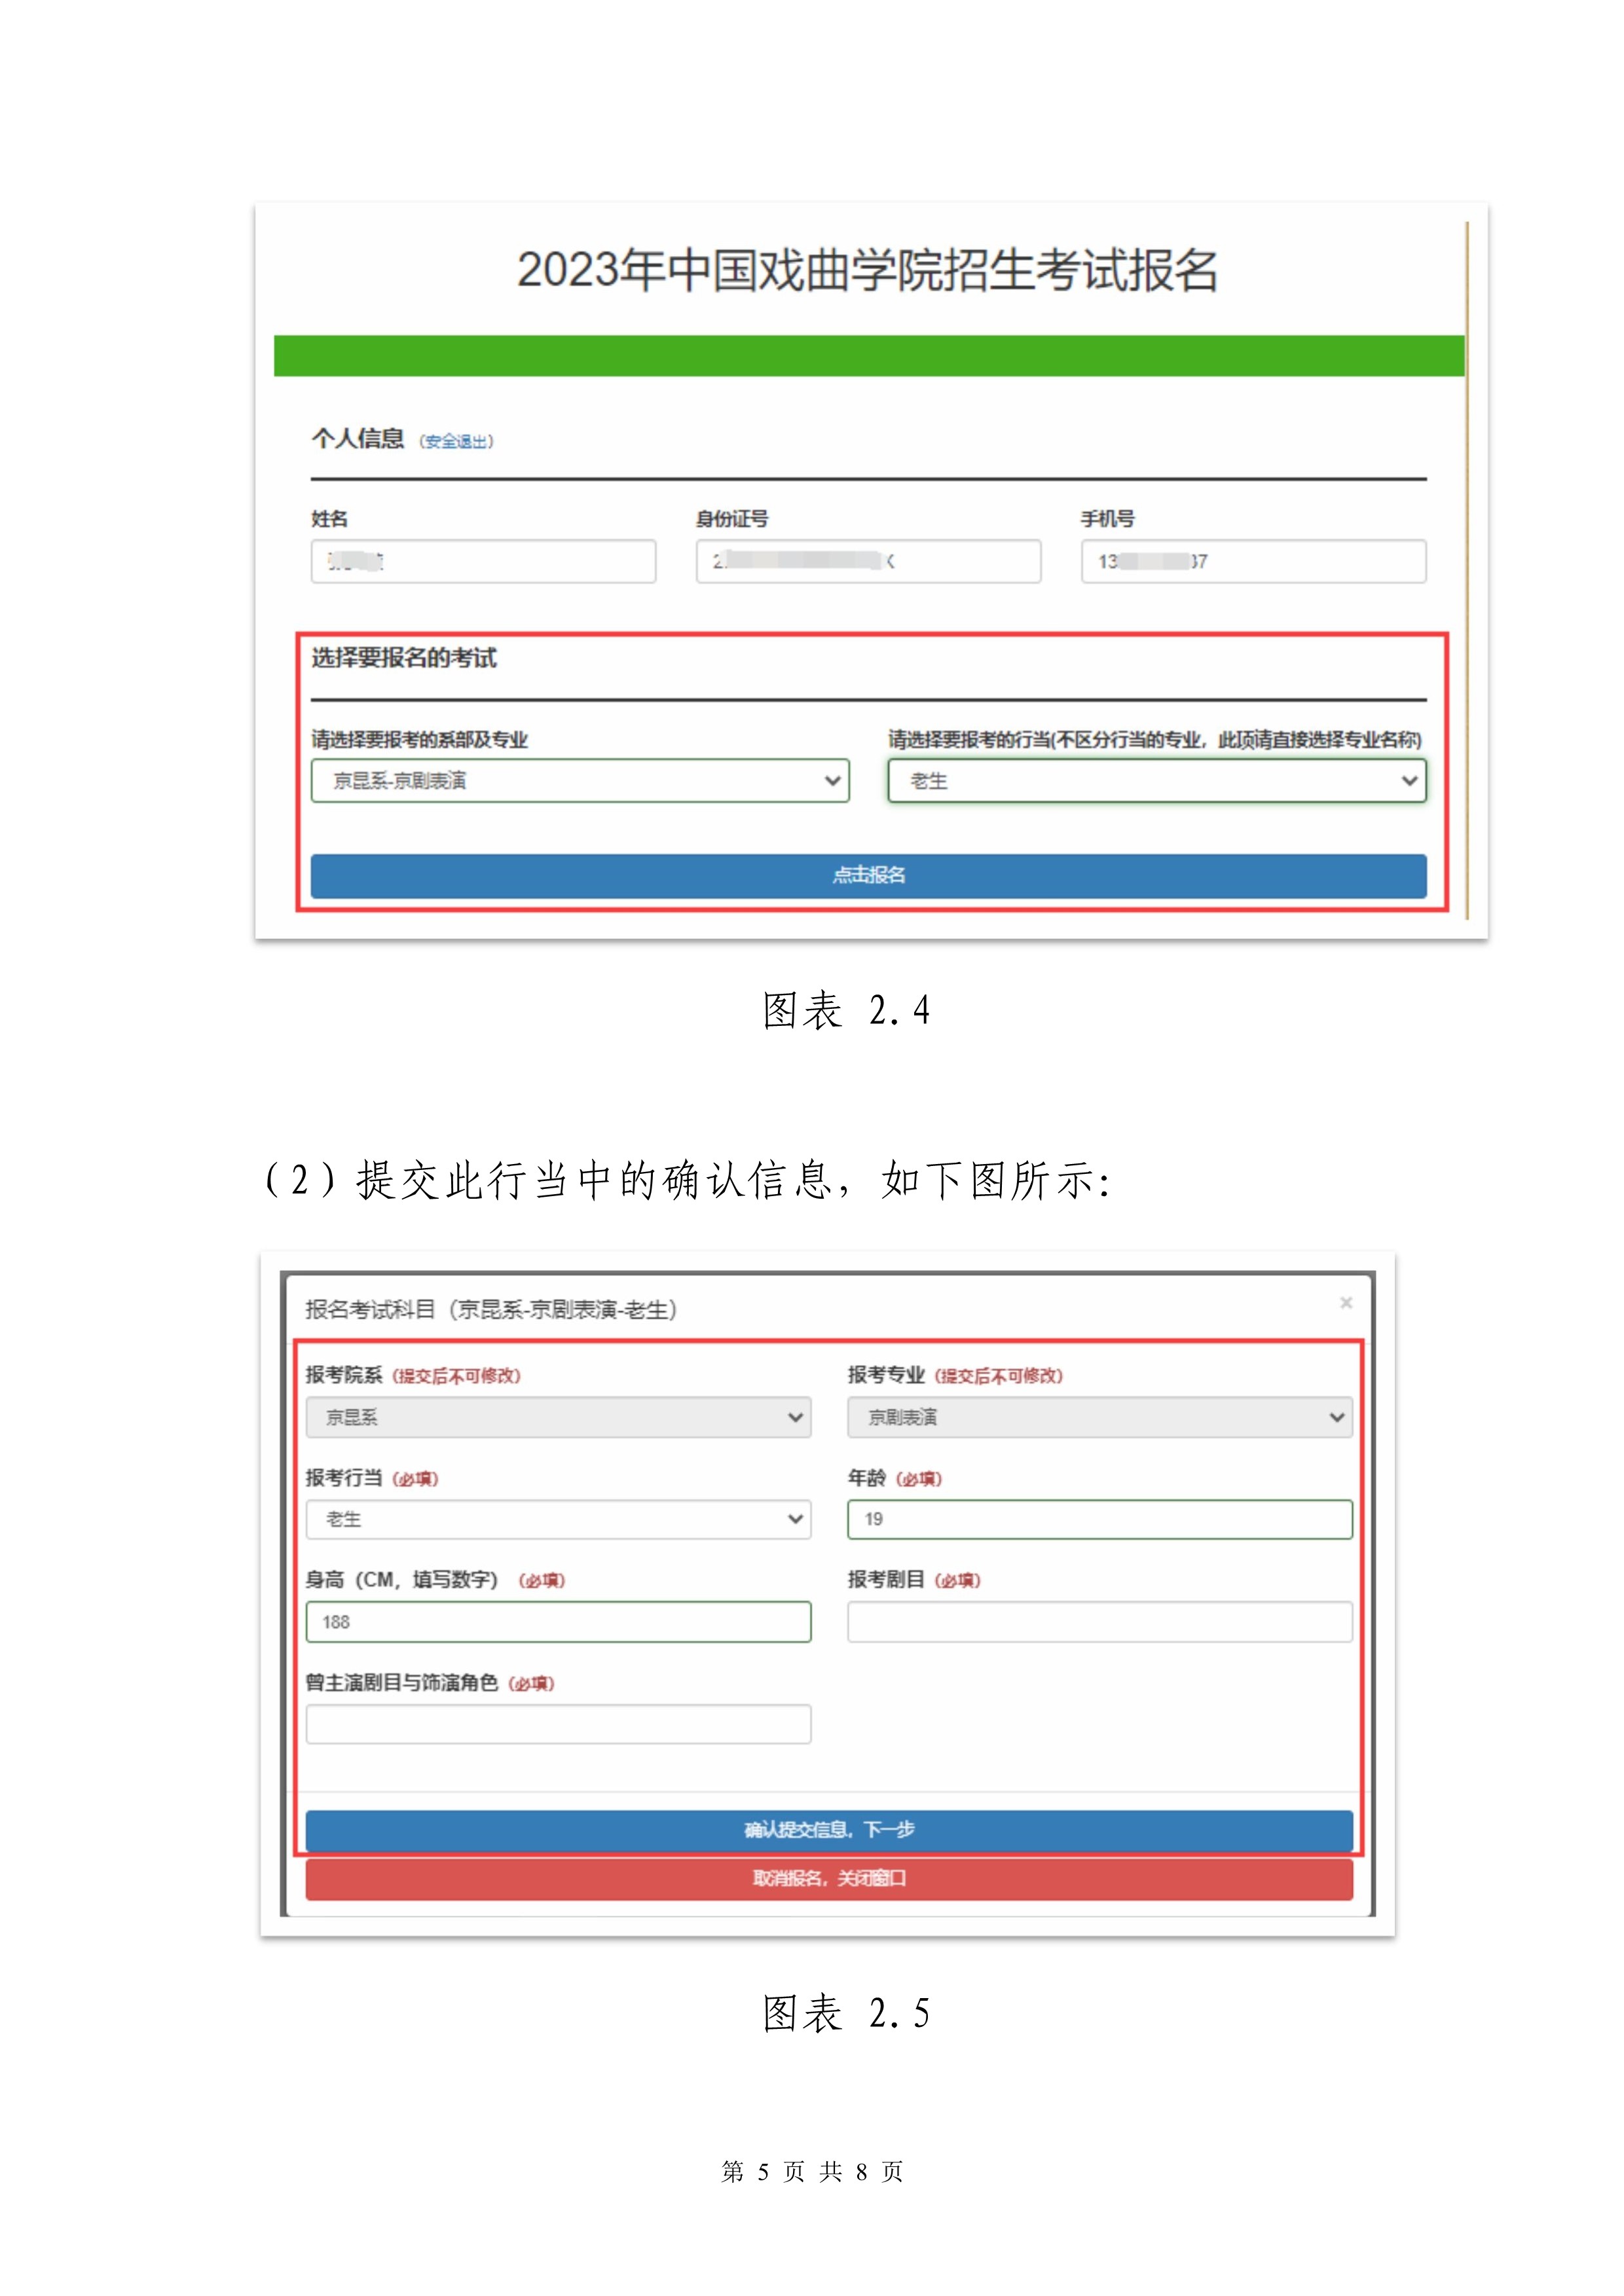 中国戏曲学院2023本科招生专业考试网上报名操作手册_5.jpg